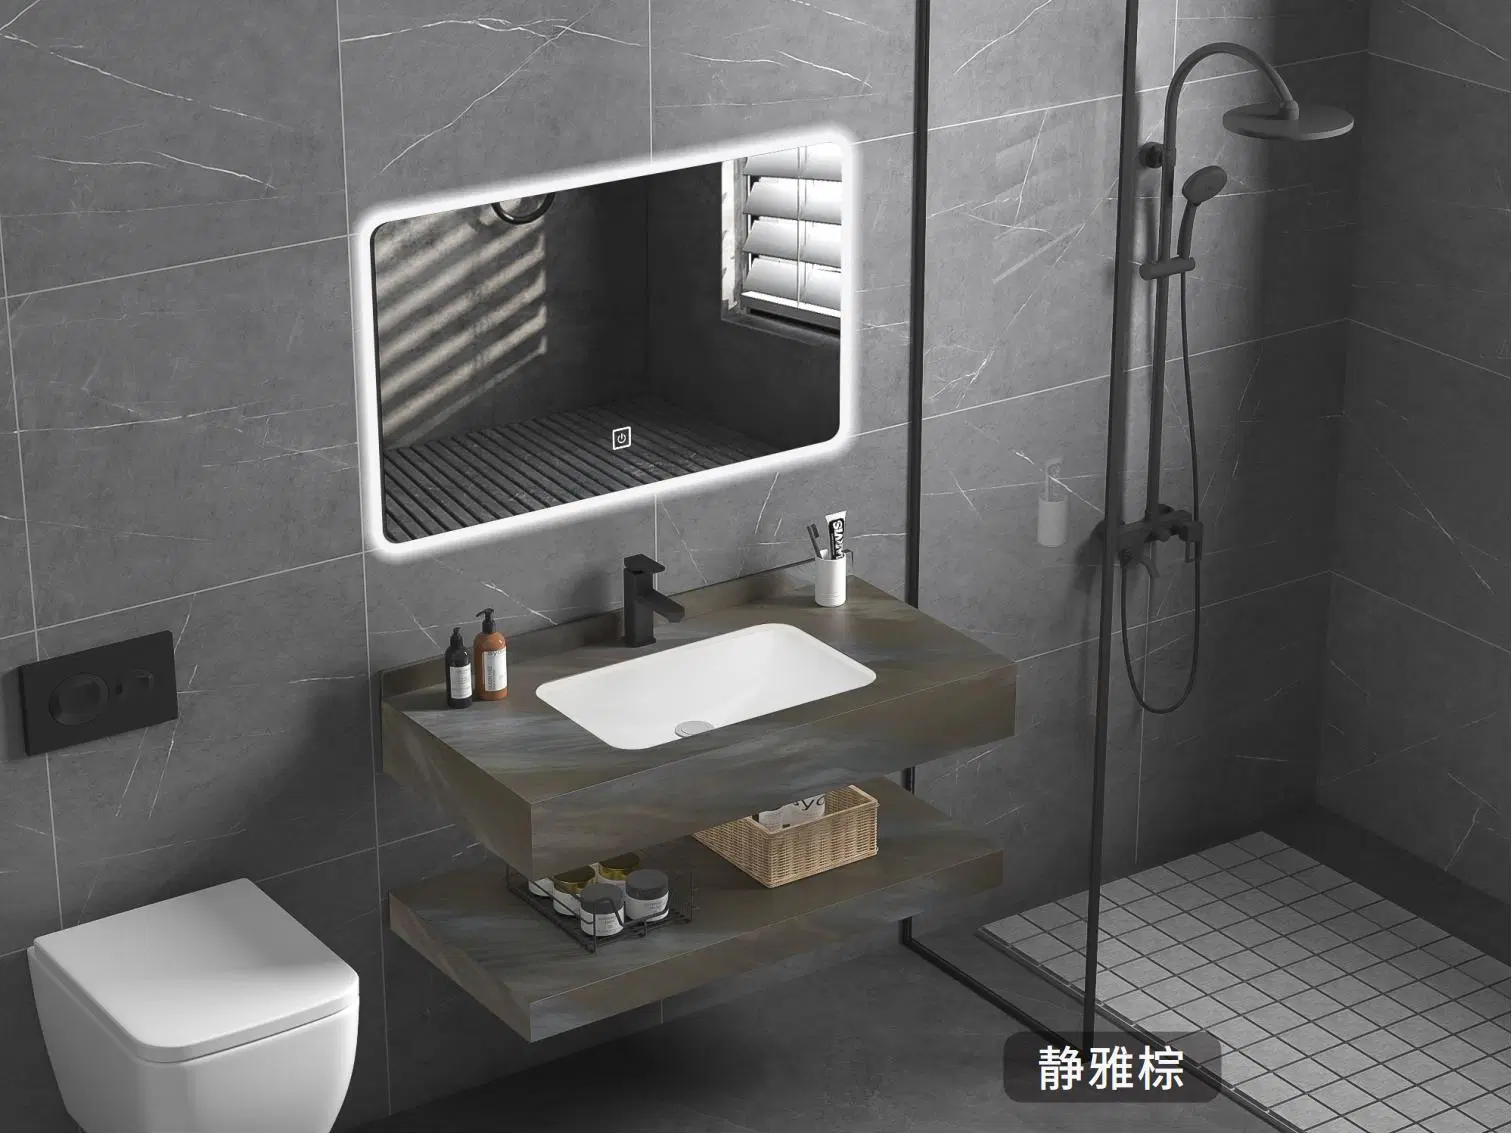 مرآة مضيئة لأثاث الحمام مع خزانة وحوض صخري